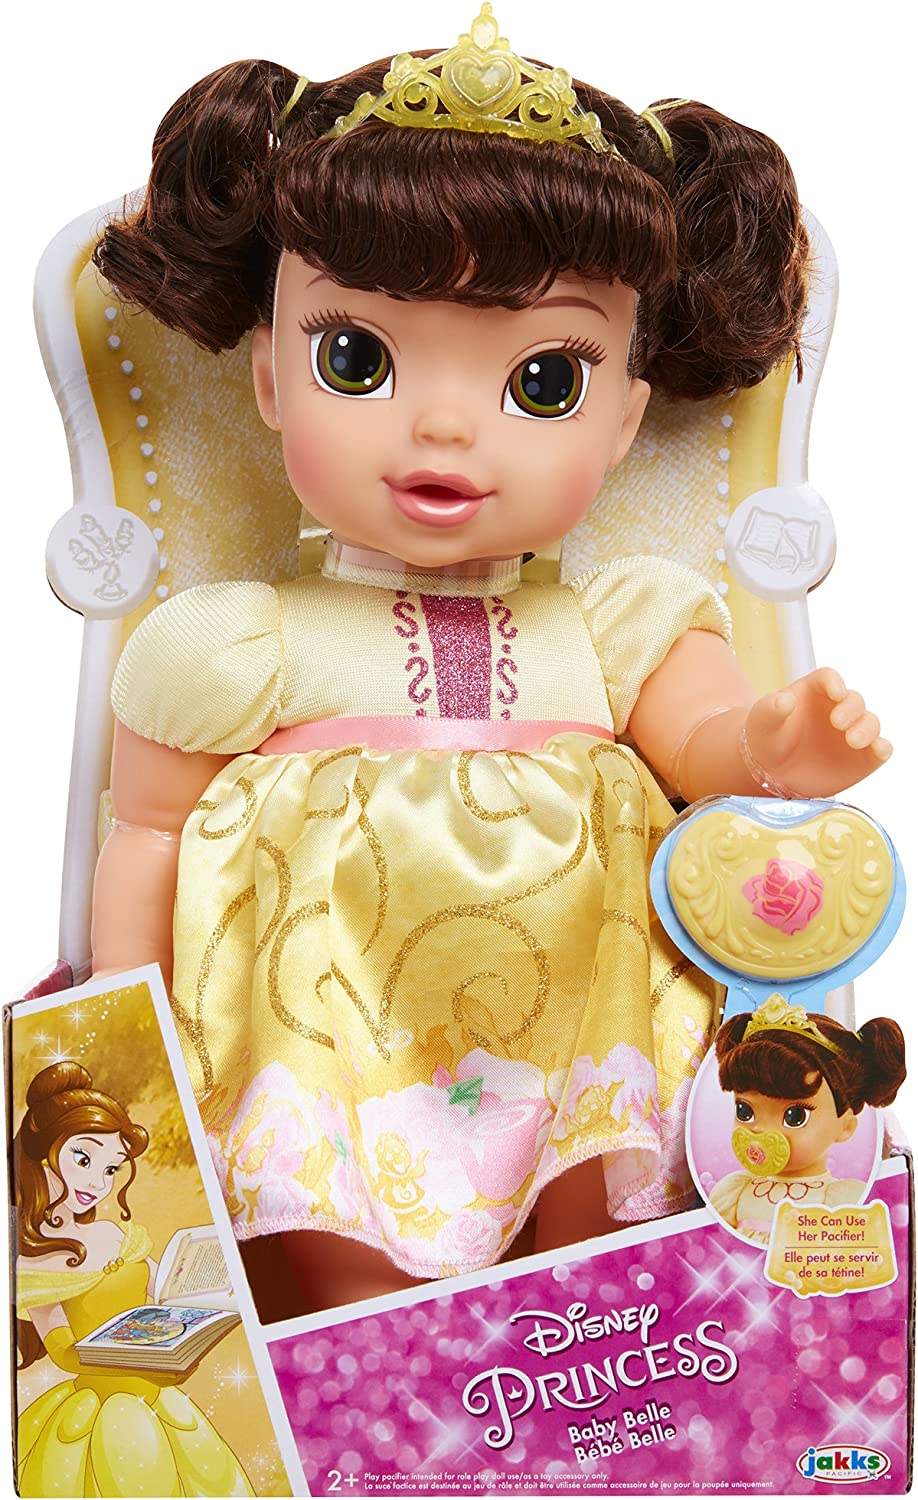 Princess Baby Doll